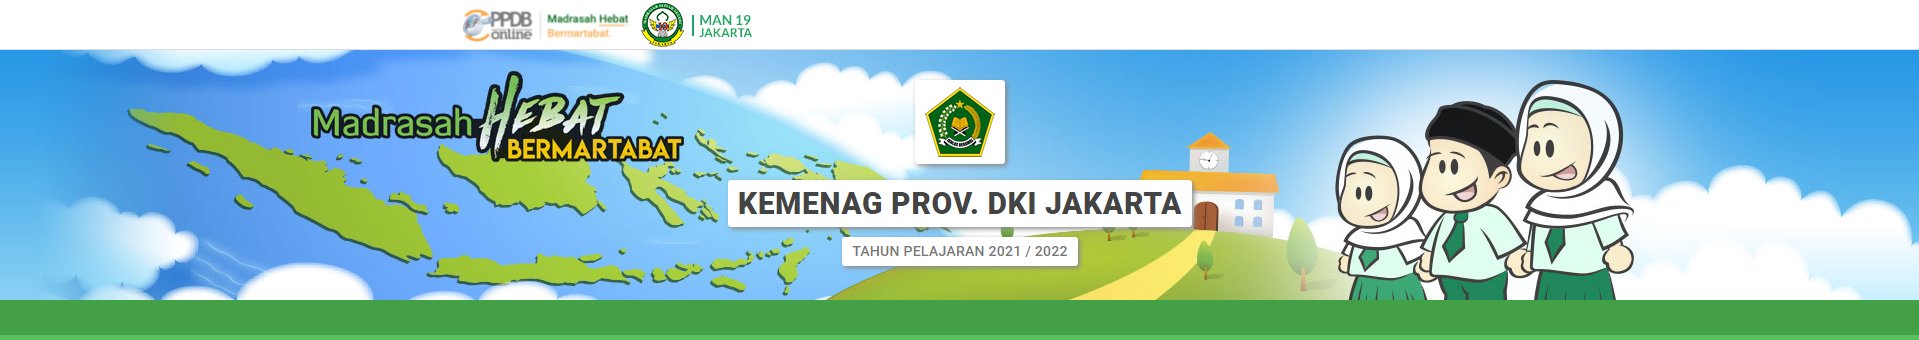 Ppdb madrasah dki 2021/2022